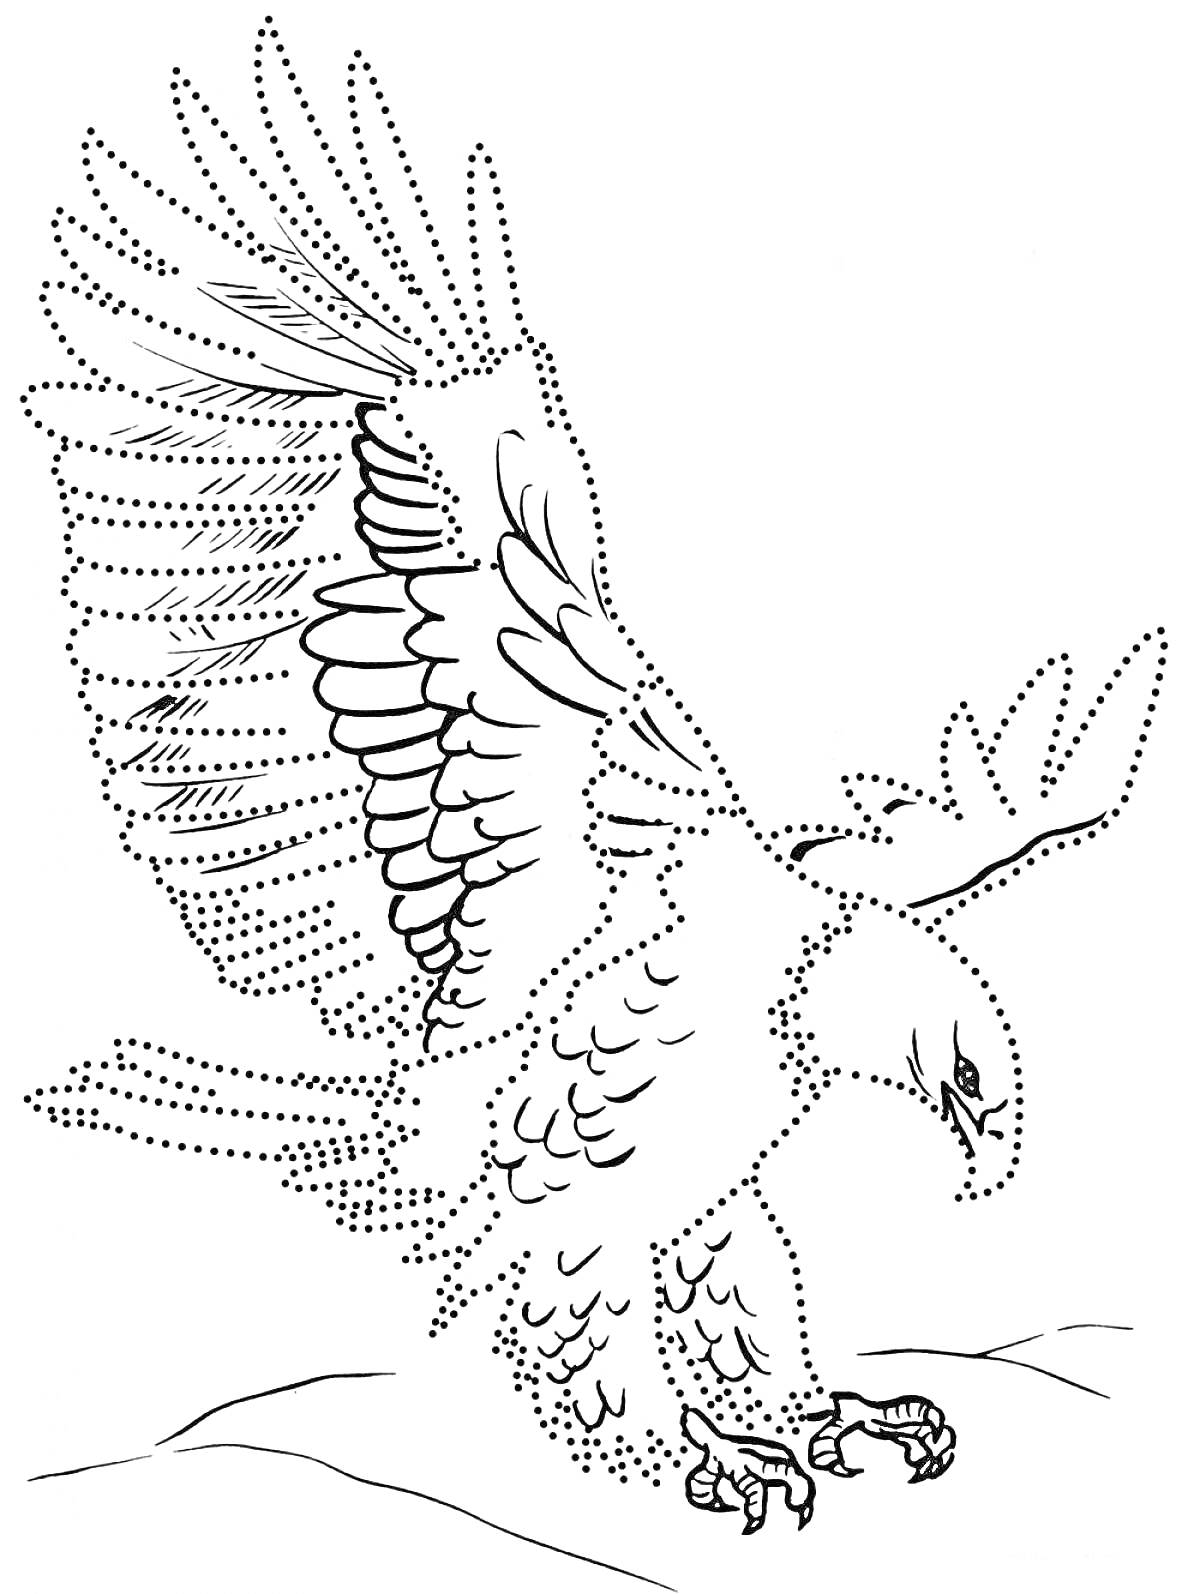 Орел, хищная птица с расправленными крыльями на скале